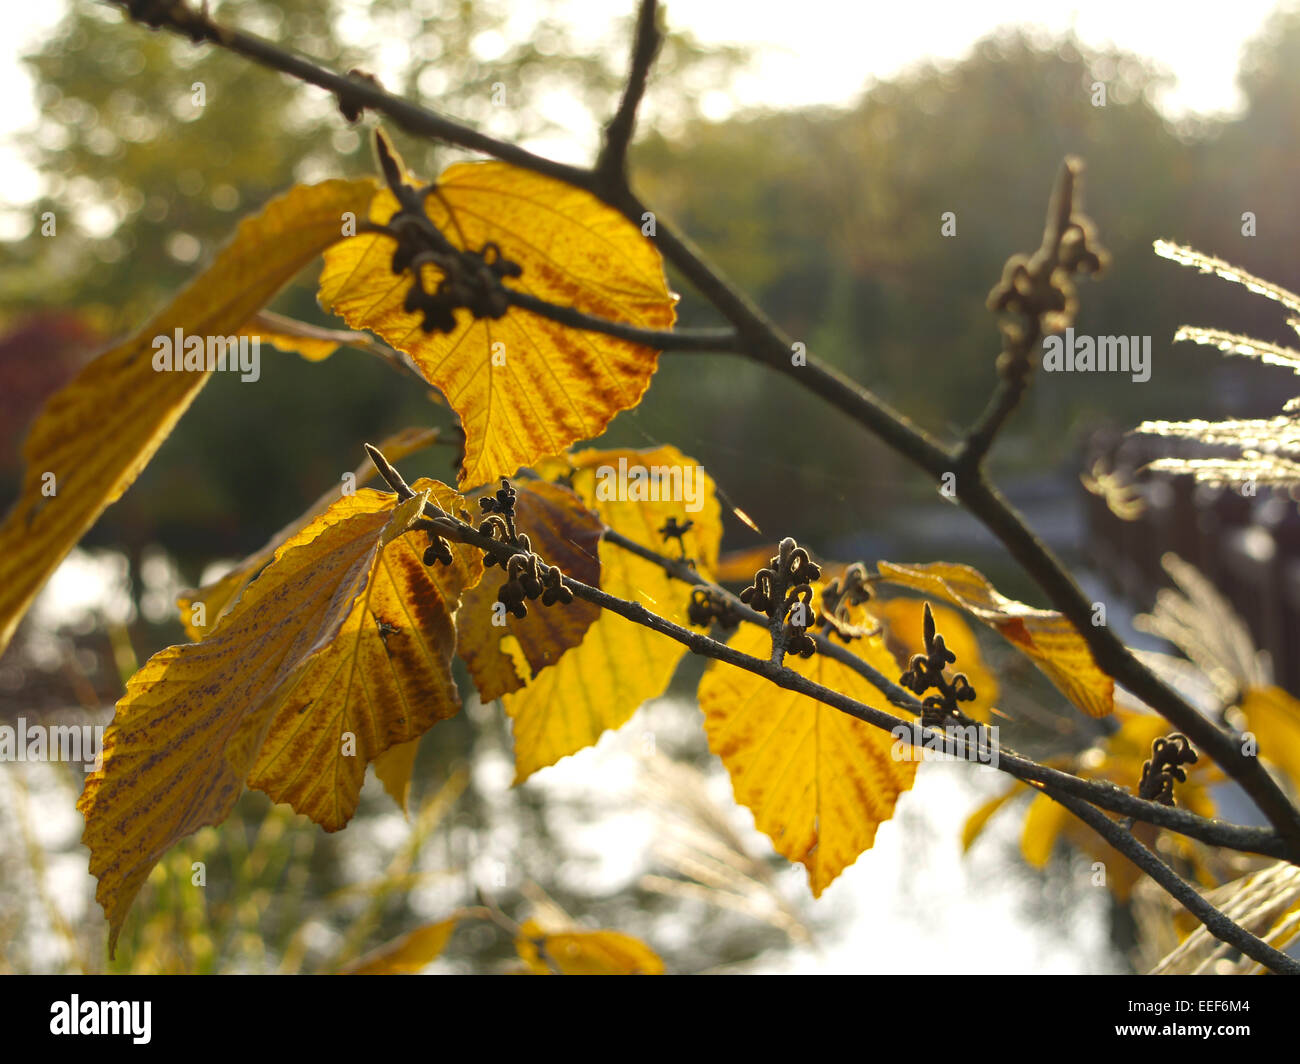 Herbst, Herbstlaub, Blaetter, Farbe, Gelb, Gruen, Jahreszeiten, Natur, Landschaft, Stimmung, Ruhe, Stille, einzeln, Menschenleer Stock Photo